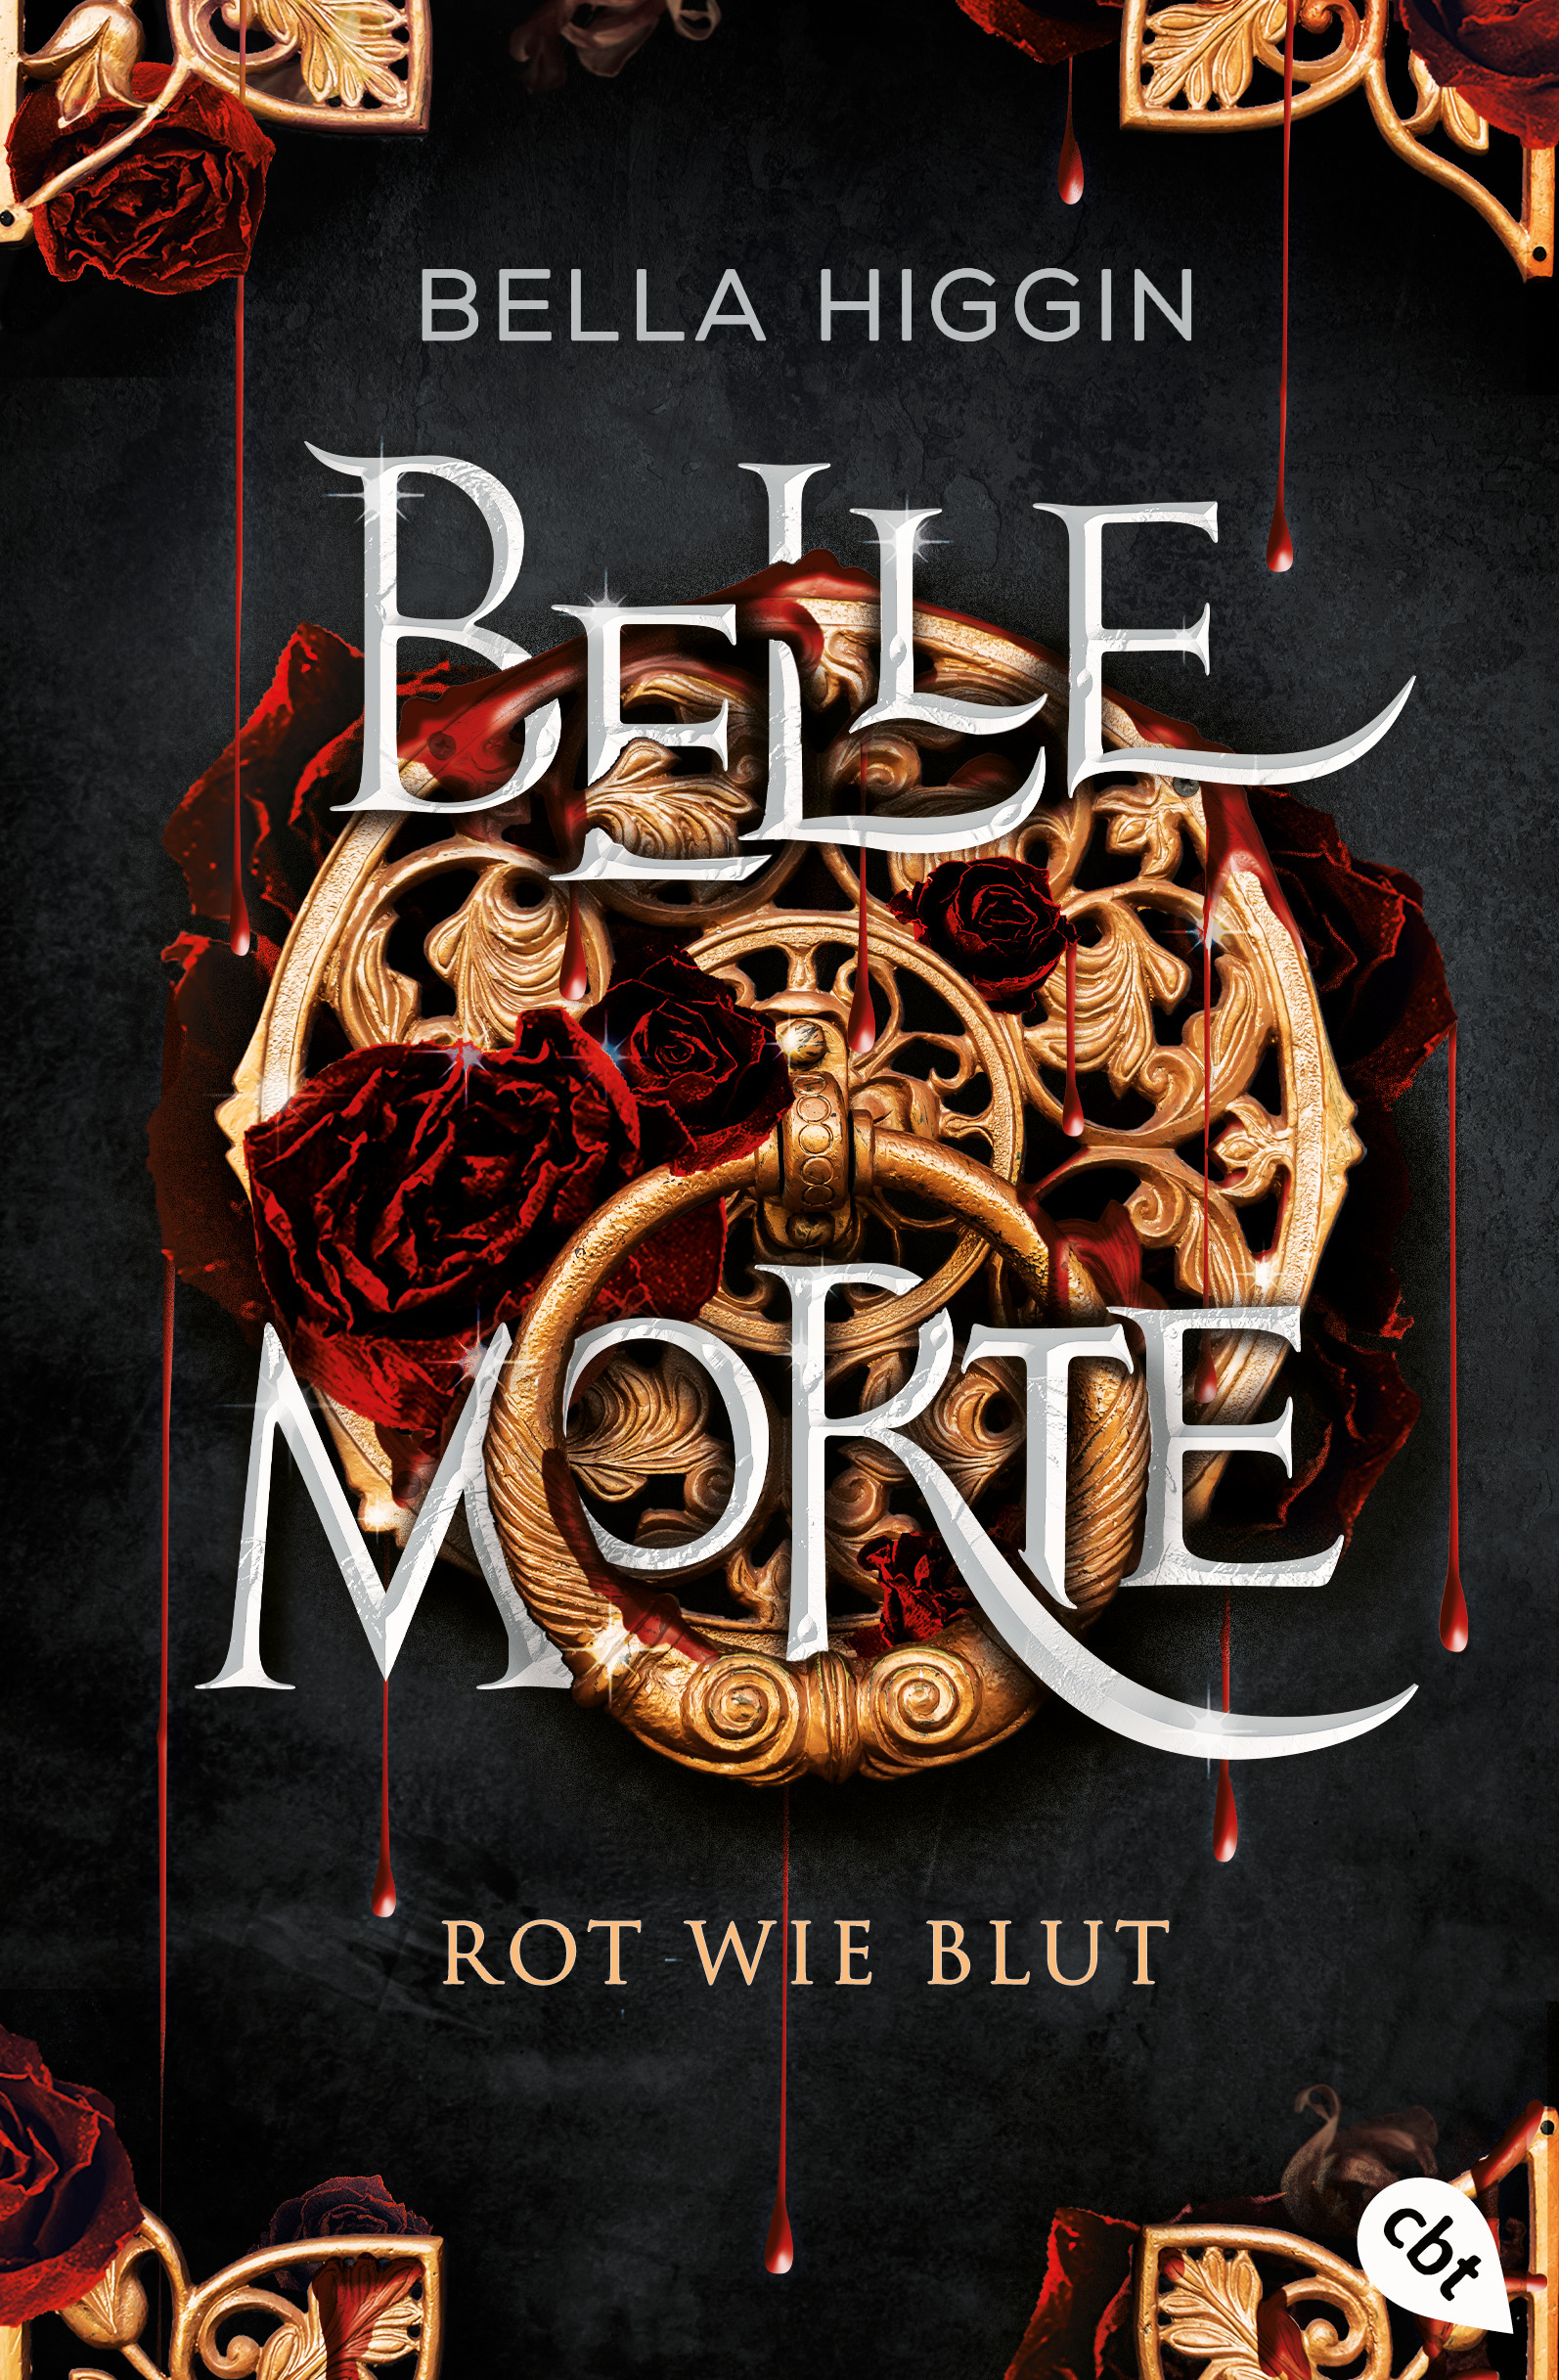 Bücherblog. Neuerscheinungen. Buchcover. Belle Morte - Rot wie Blut (Band 1) von Bella Higgin. Fantasy. Jugendbuch. cbt.